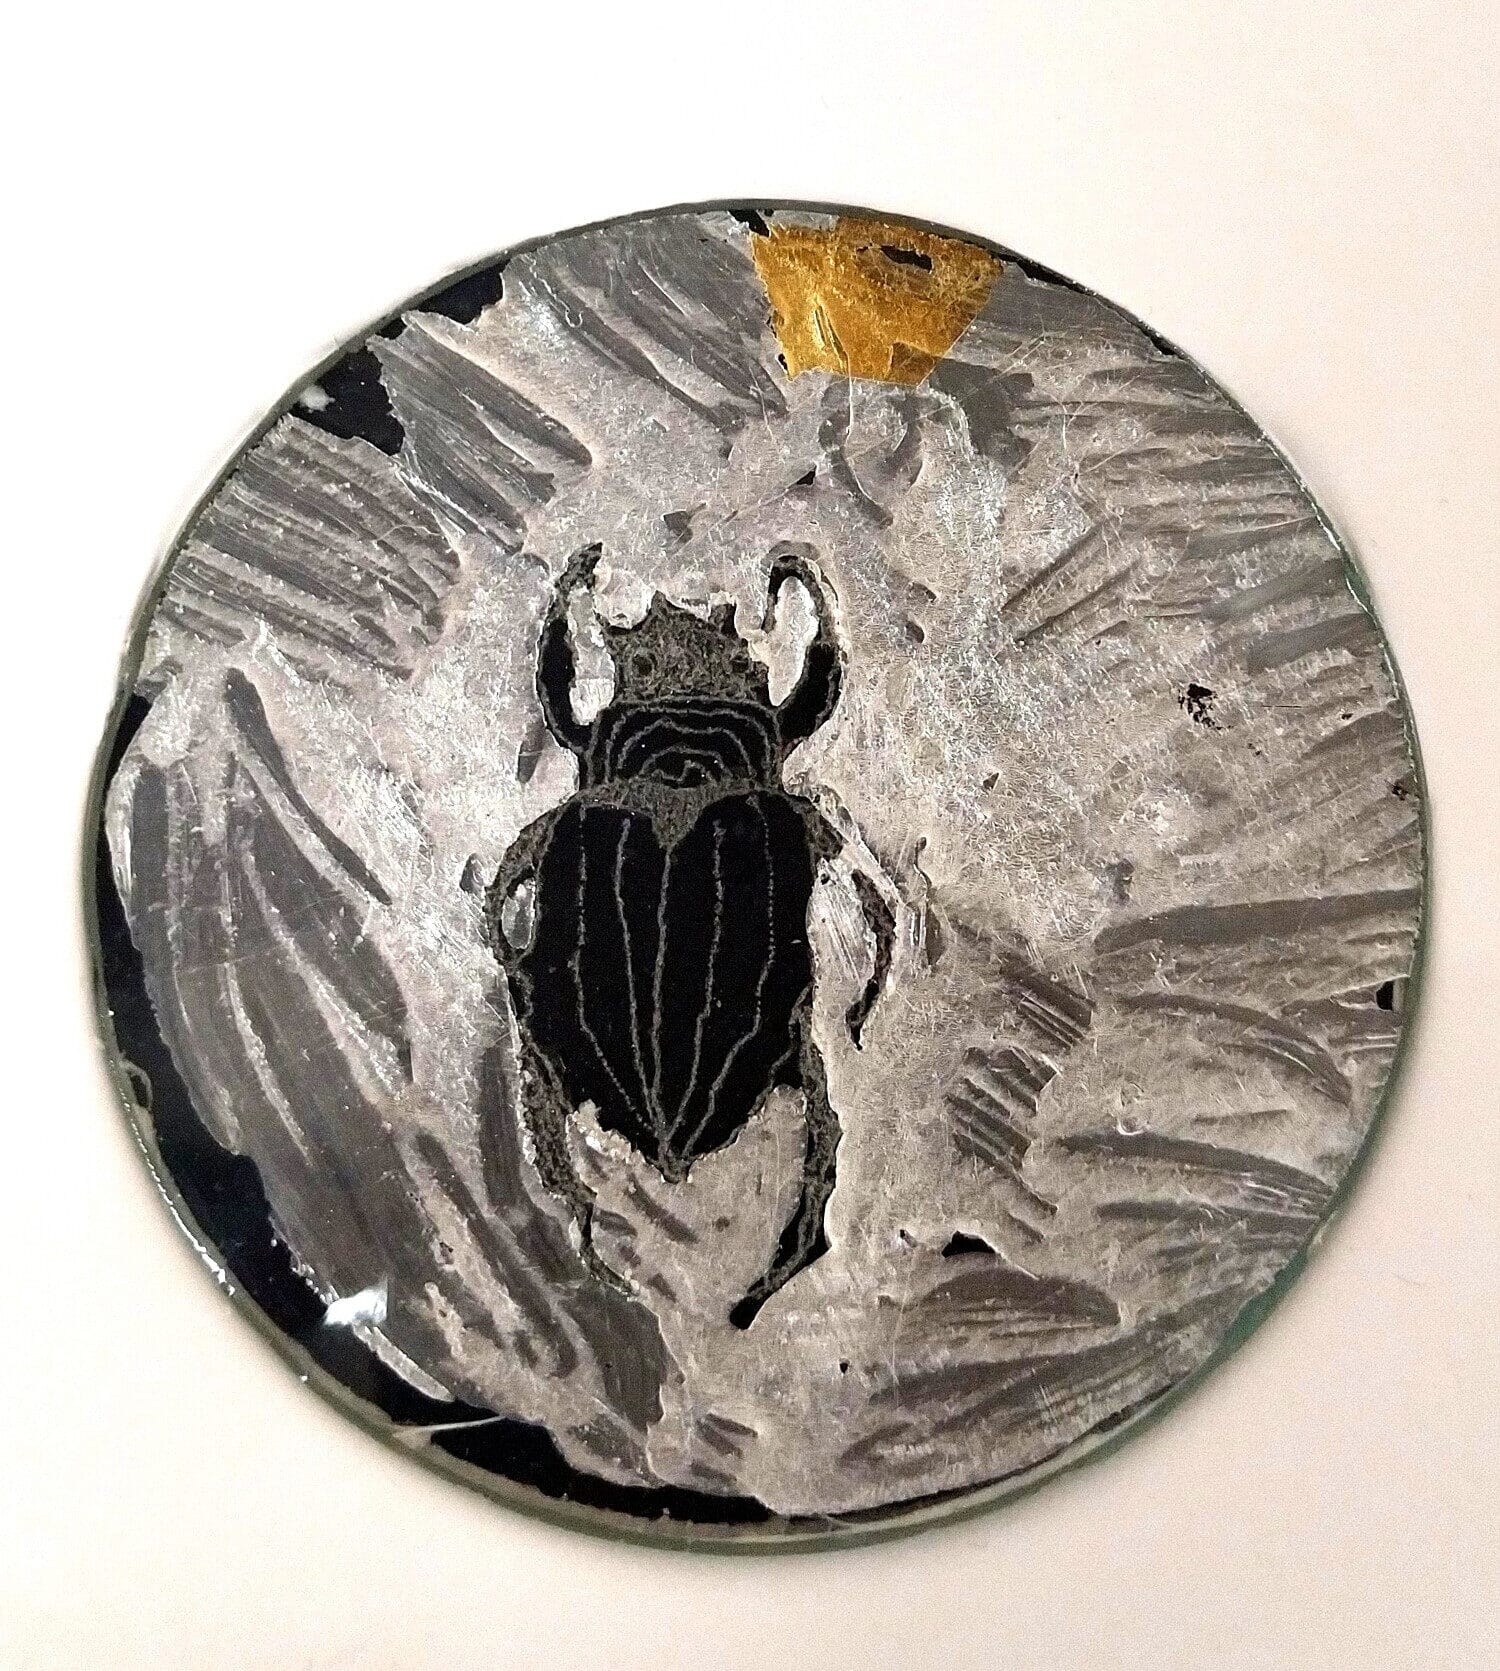 Viktor Grebennikov's Beetle